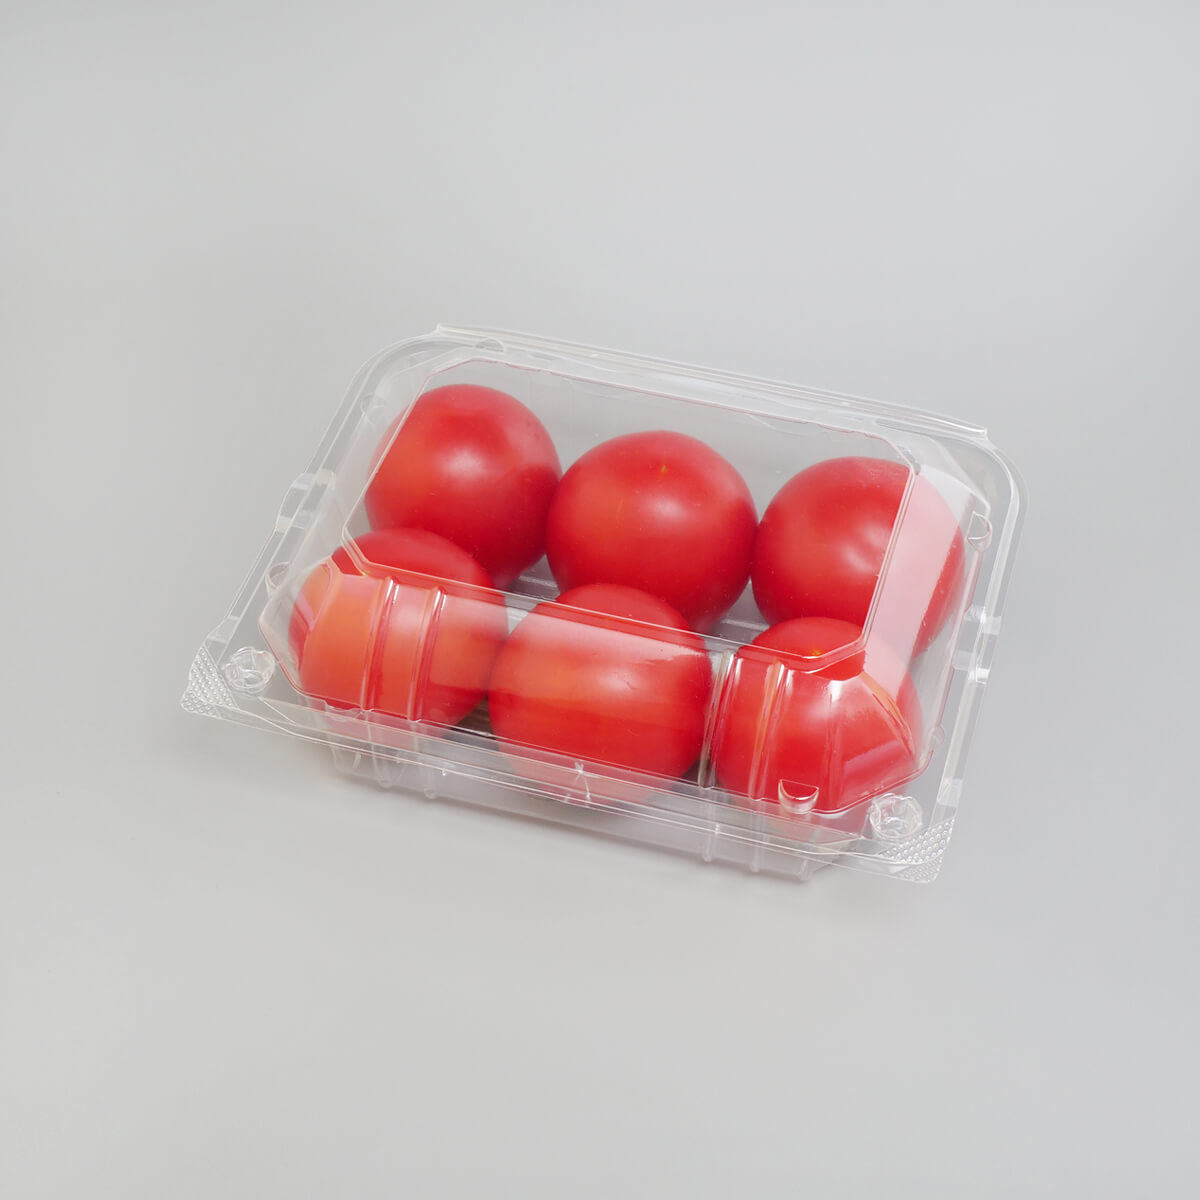 トマトの包装資材(パッケージ・容器)特集 | 野菜・フルーツパッケージとシール印刷のパブリック商事株式会社